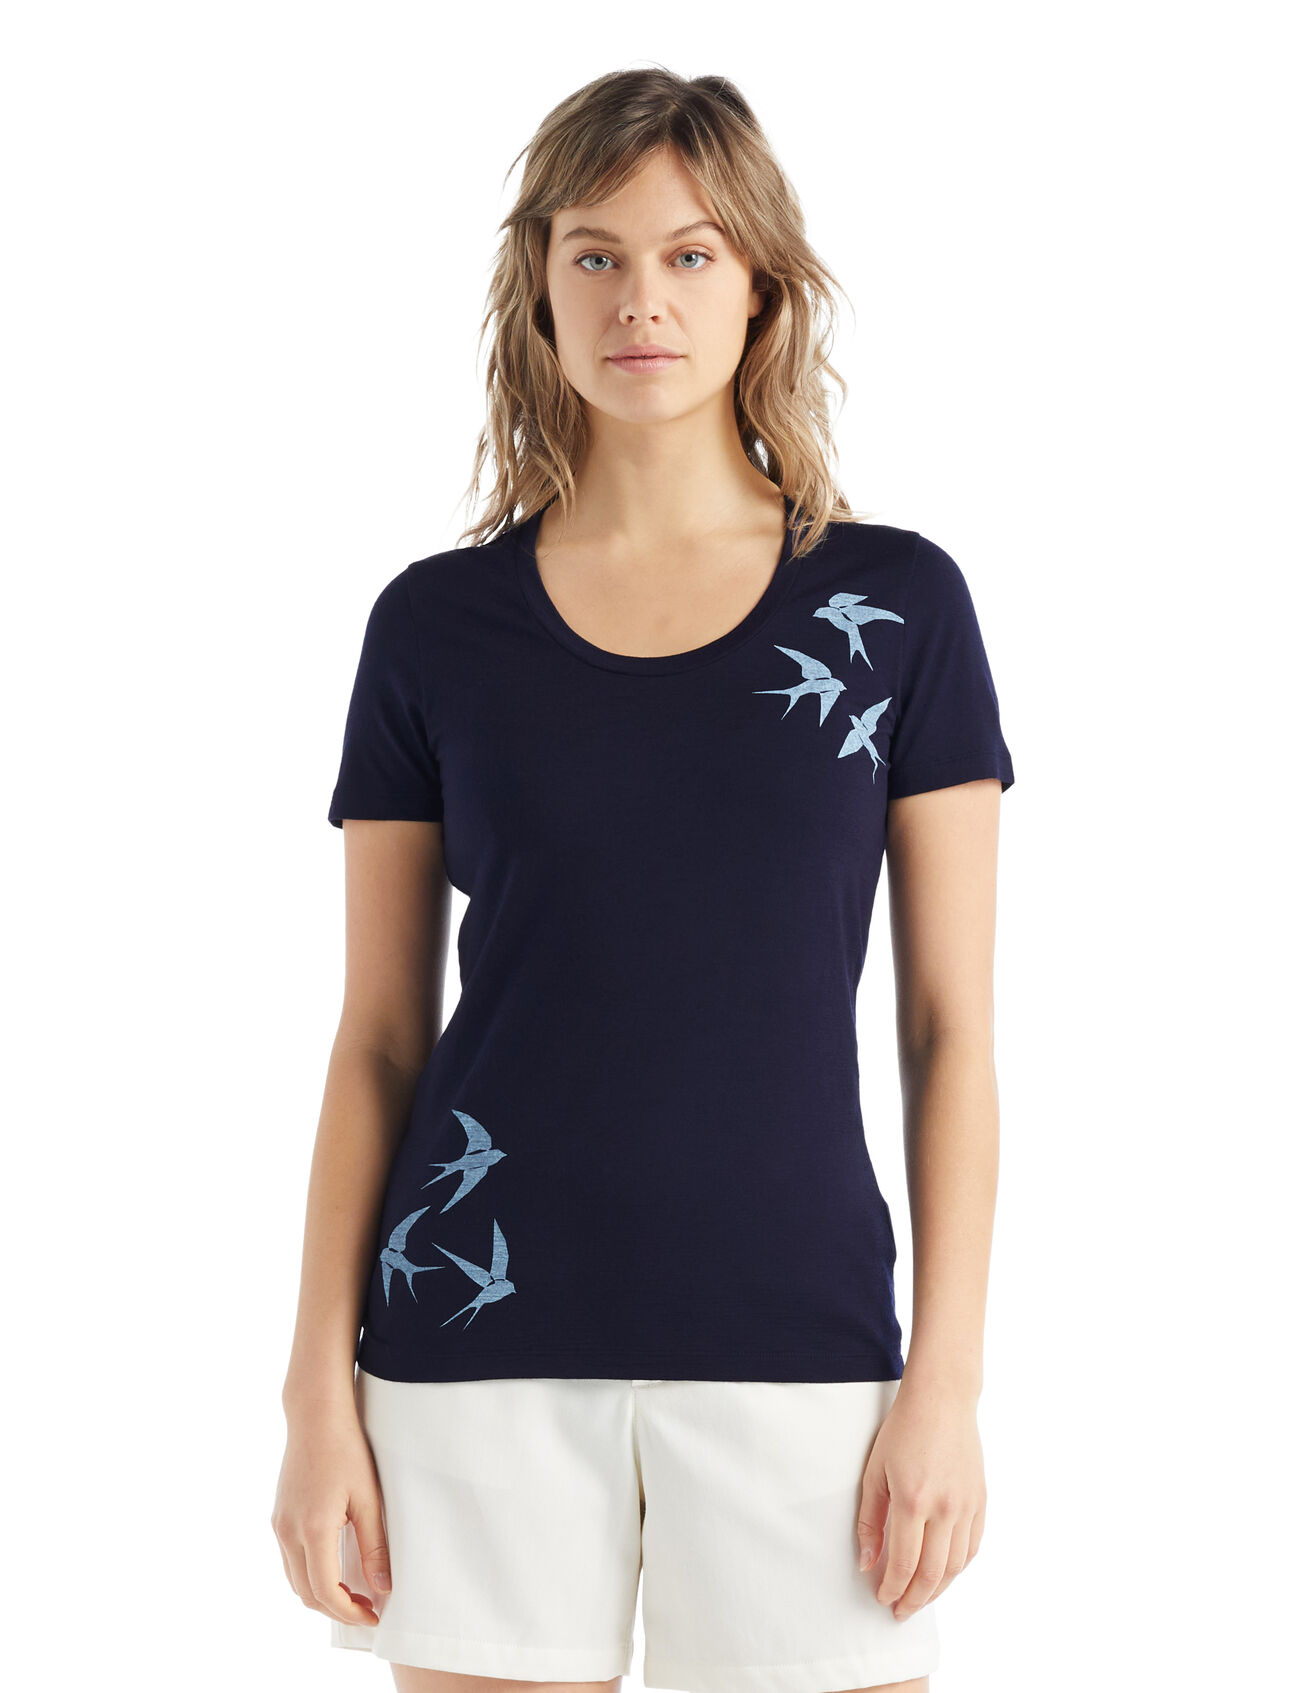 Merino Tech Lite II T-Shirt mit U-Ausschnitt Swarming Shapes Damen Unser vielseitiges technisches Merino T-Shirt, das dich bei jedem Abenteuer mit Komfort, Atmungsaktivität und Geruchsneutralität begleitet, das kurzärmlige Tech Lite II T-Shirt mit U-Ausschnitt Swarming Shapes überzeugt dank 100% Merinowolle durch natürliche Performance. Der originelle Print ist durch eine Murmuration – das natürliche Schwarmverhalten von Vögeln – inspiriert. 